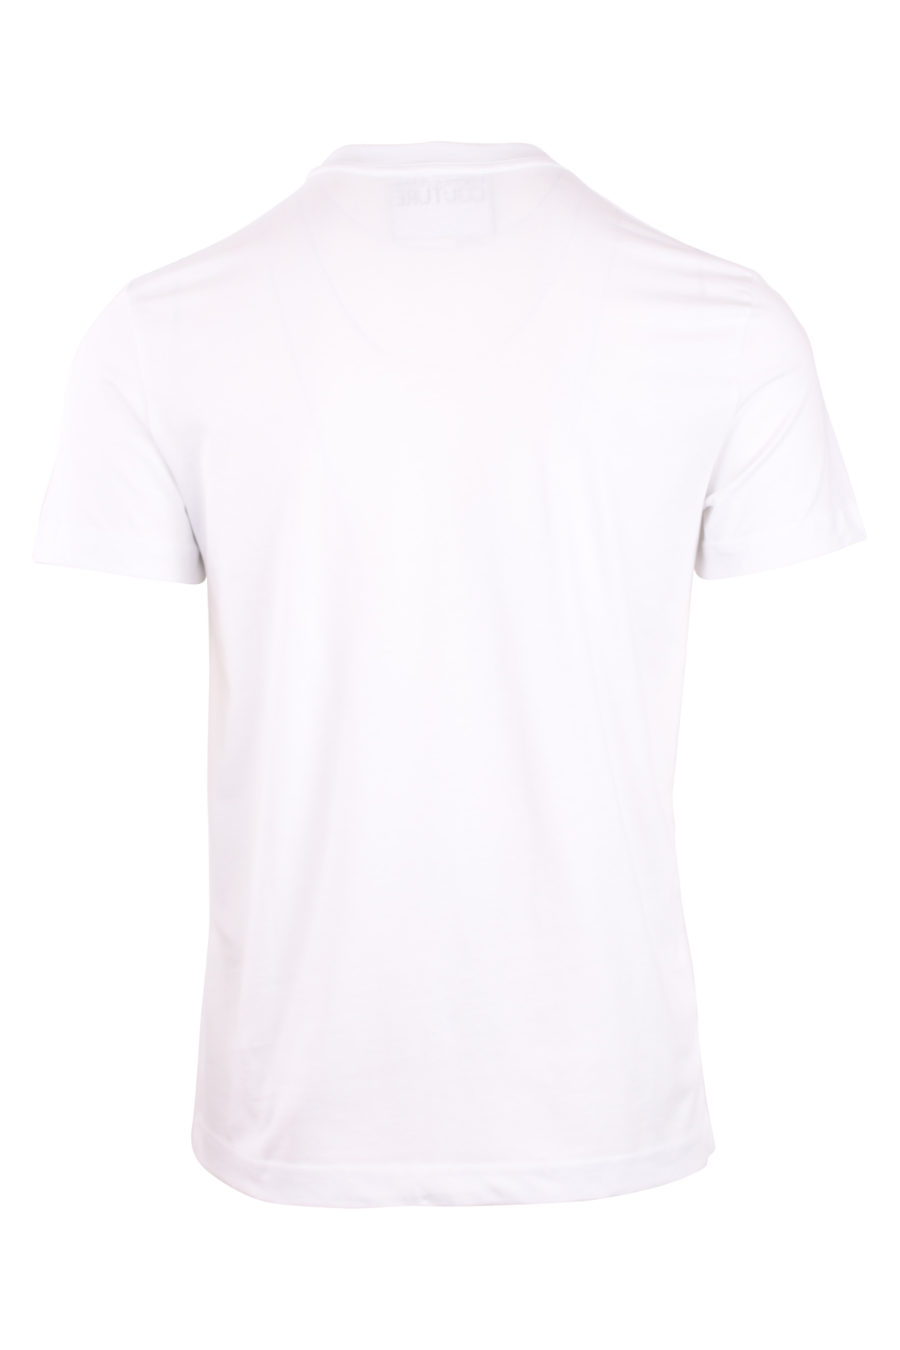 T-shirt branca com um pequeno logótipo triangular - IMG 0754